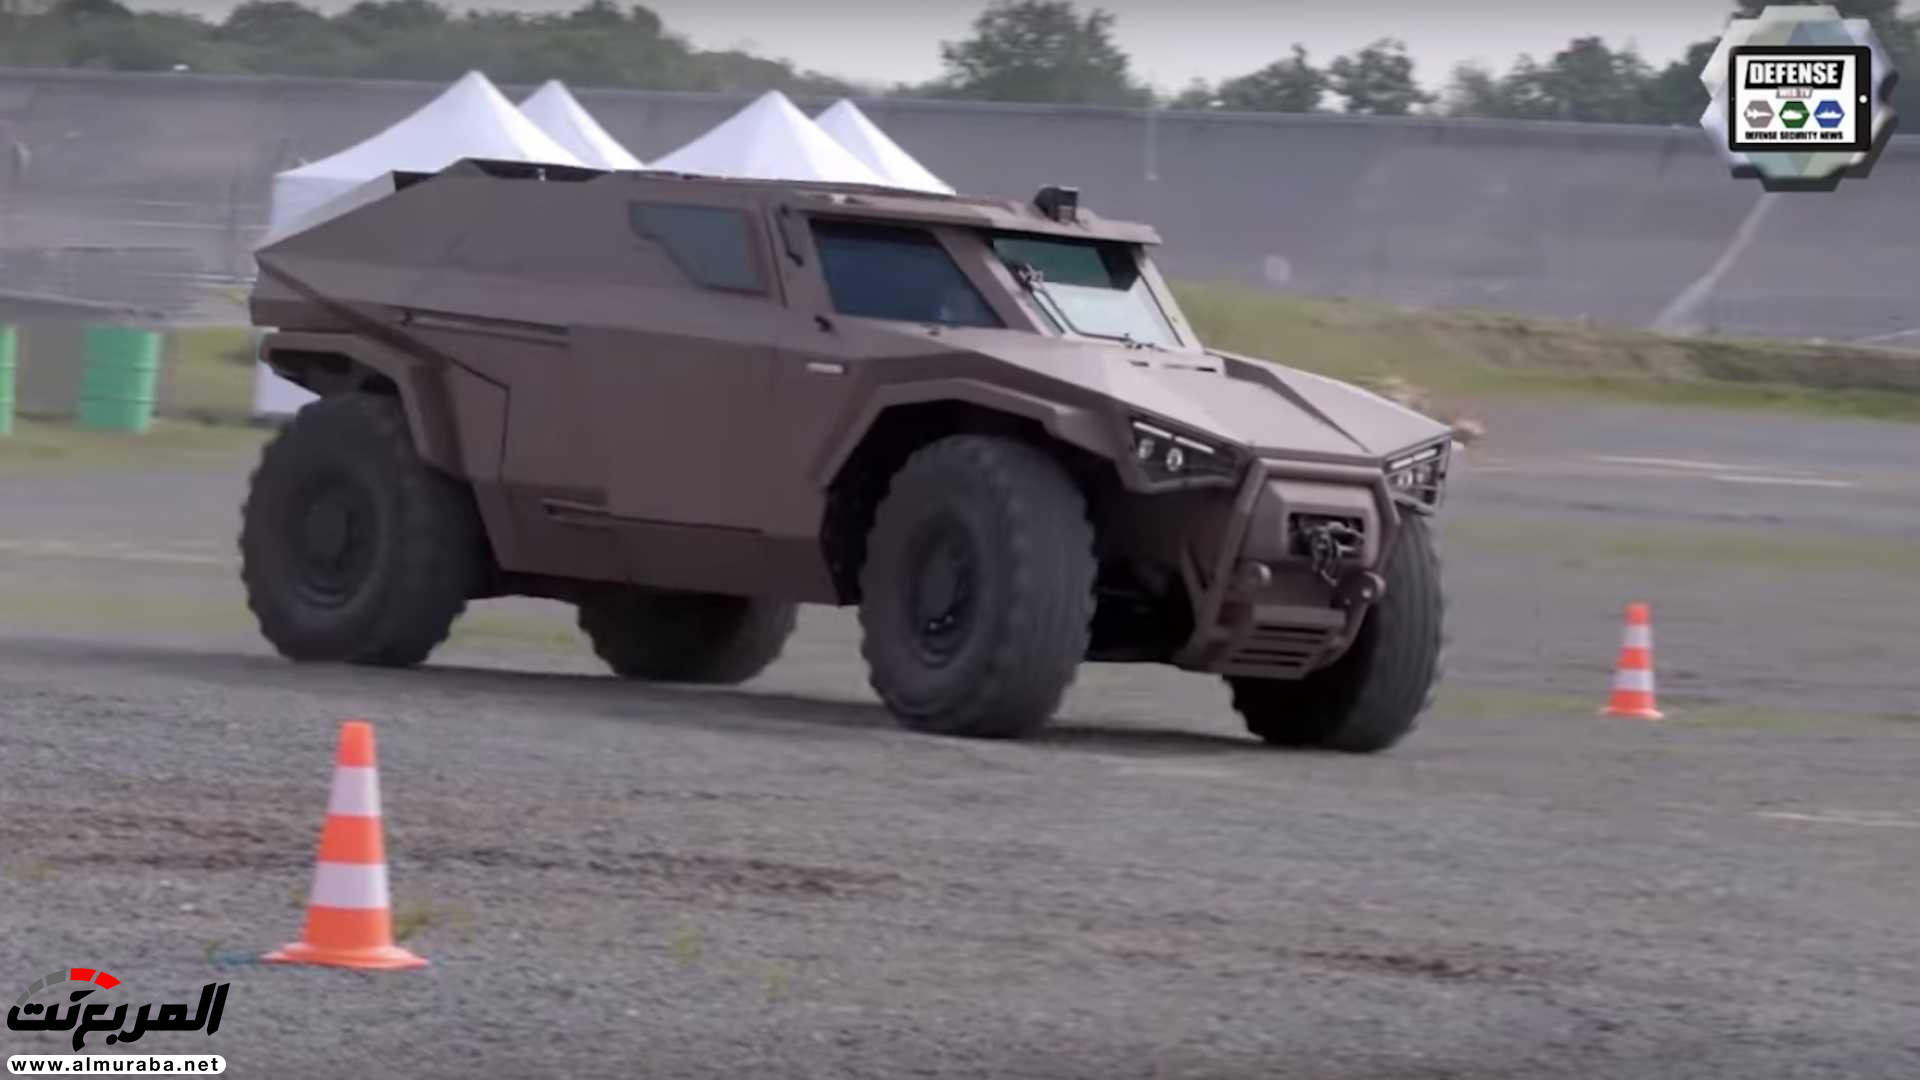 "بالفيديو والصور" فولفو صنعت سيارة عسكرية تنافس همر 5